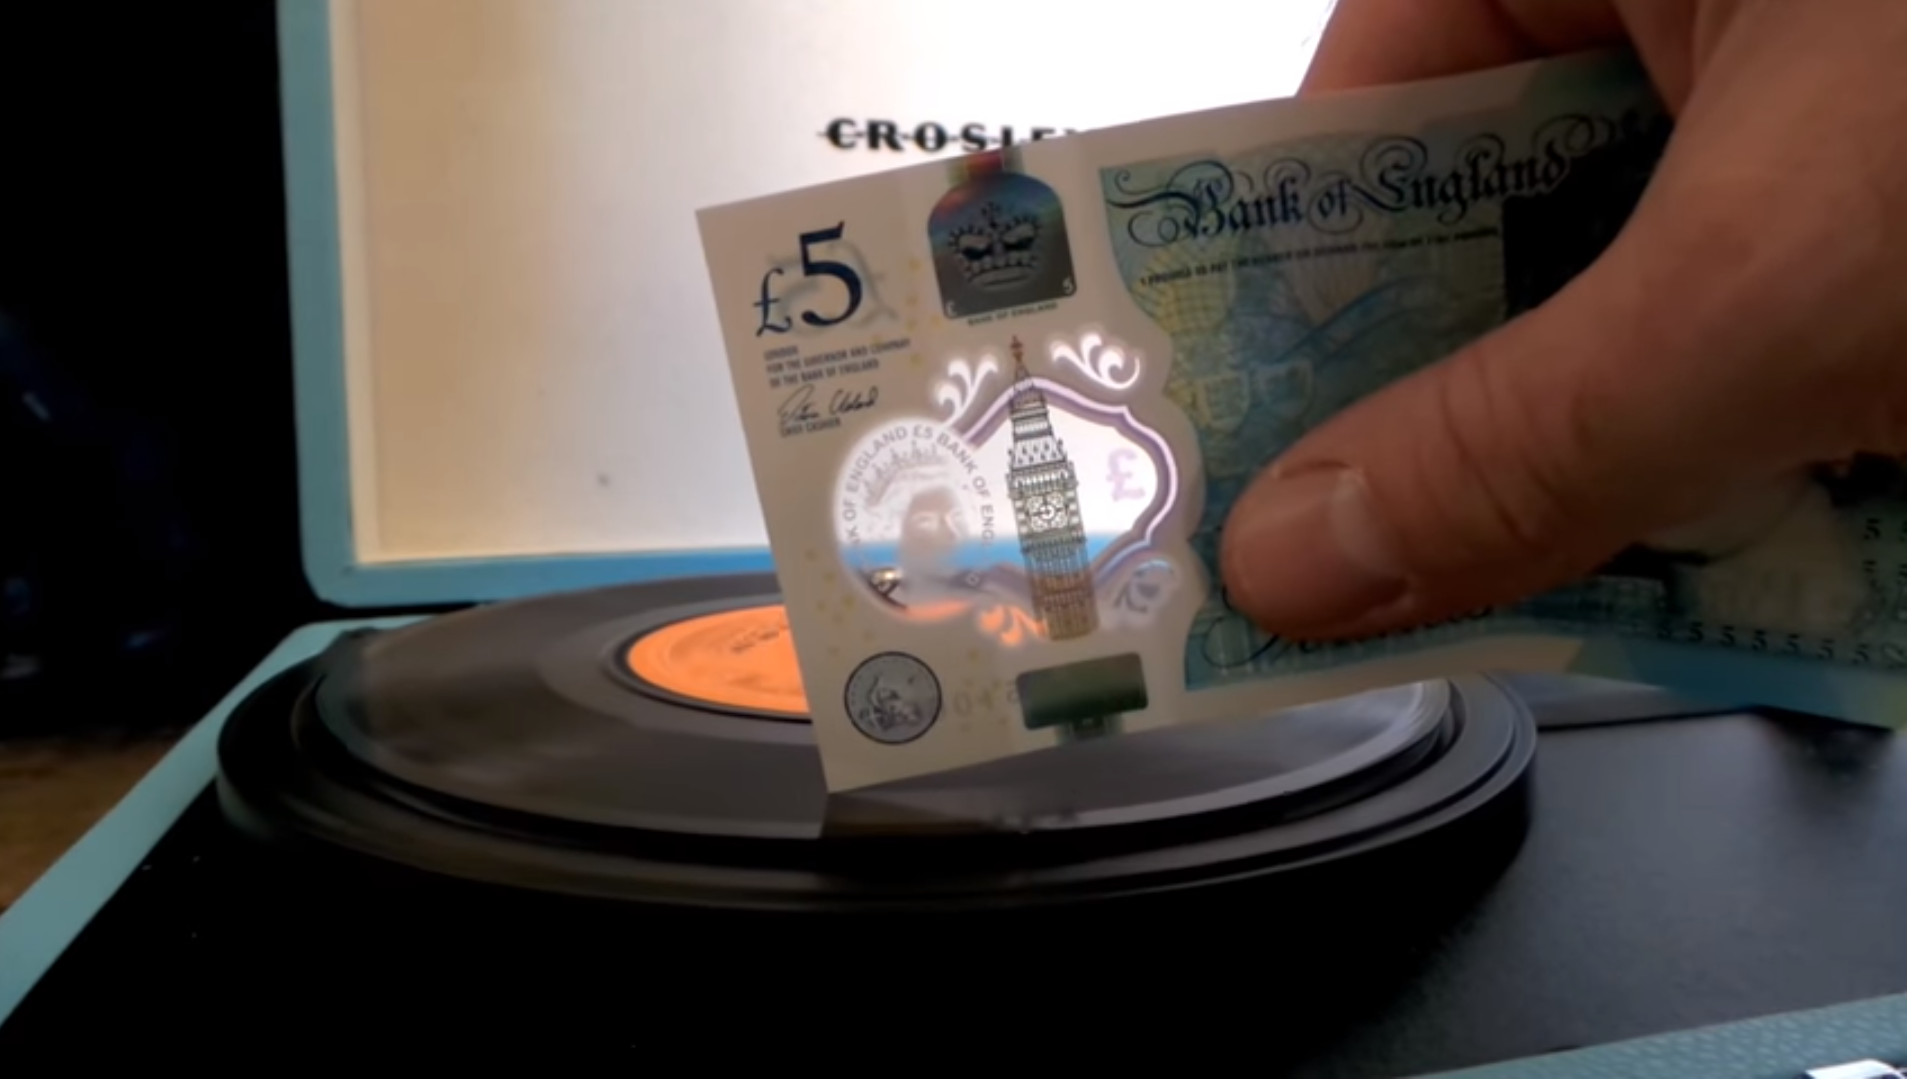 Schallplatten abspielen via Banknote. Bild: YouTube Screenshot